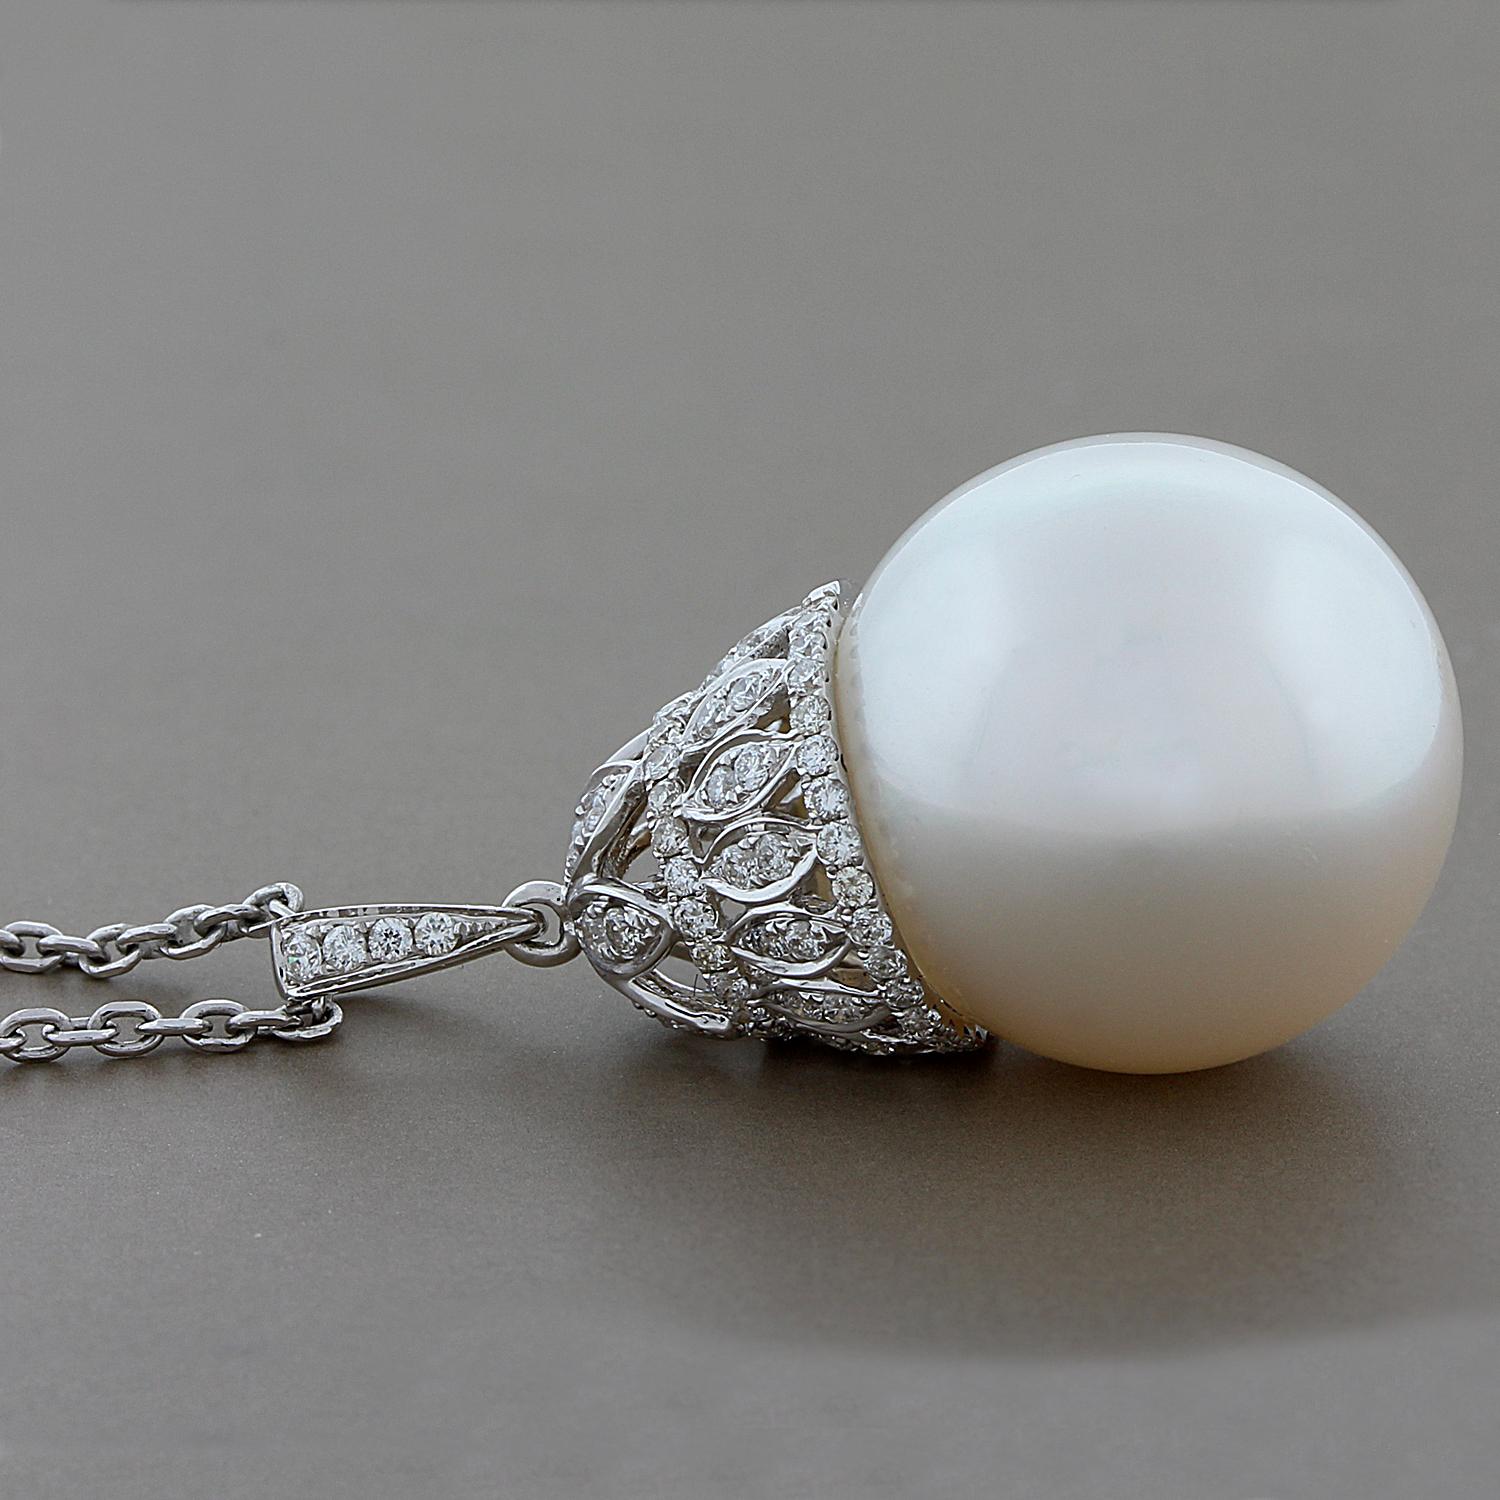 Ce pendentif féminin présente une perle des mers du Sud de 16,5 mm avec 0,40 carats de diamants ronds de pureté VS.  La perle est lustrée et sa couleur de surface est uniforme sur tout son pourtour.  Un design royal serti dans de l'or blanc 18K.